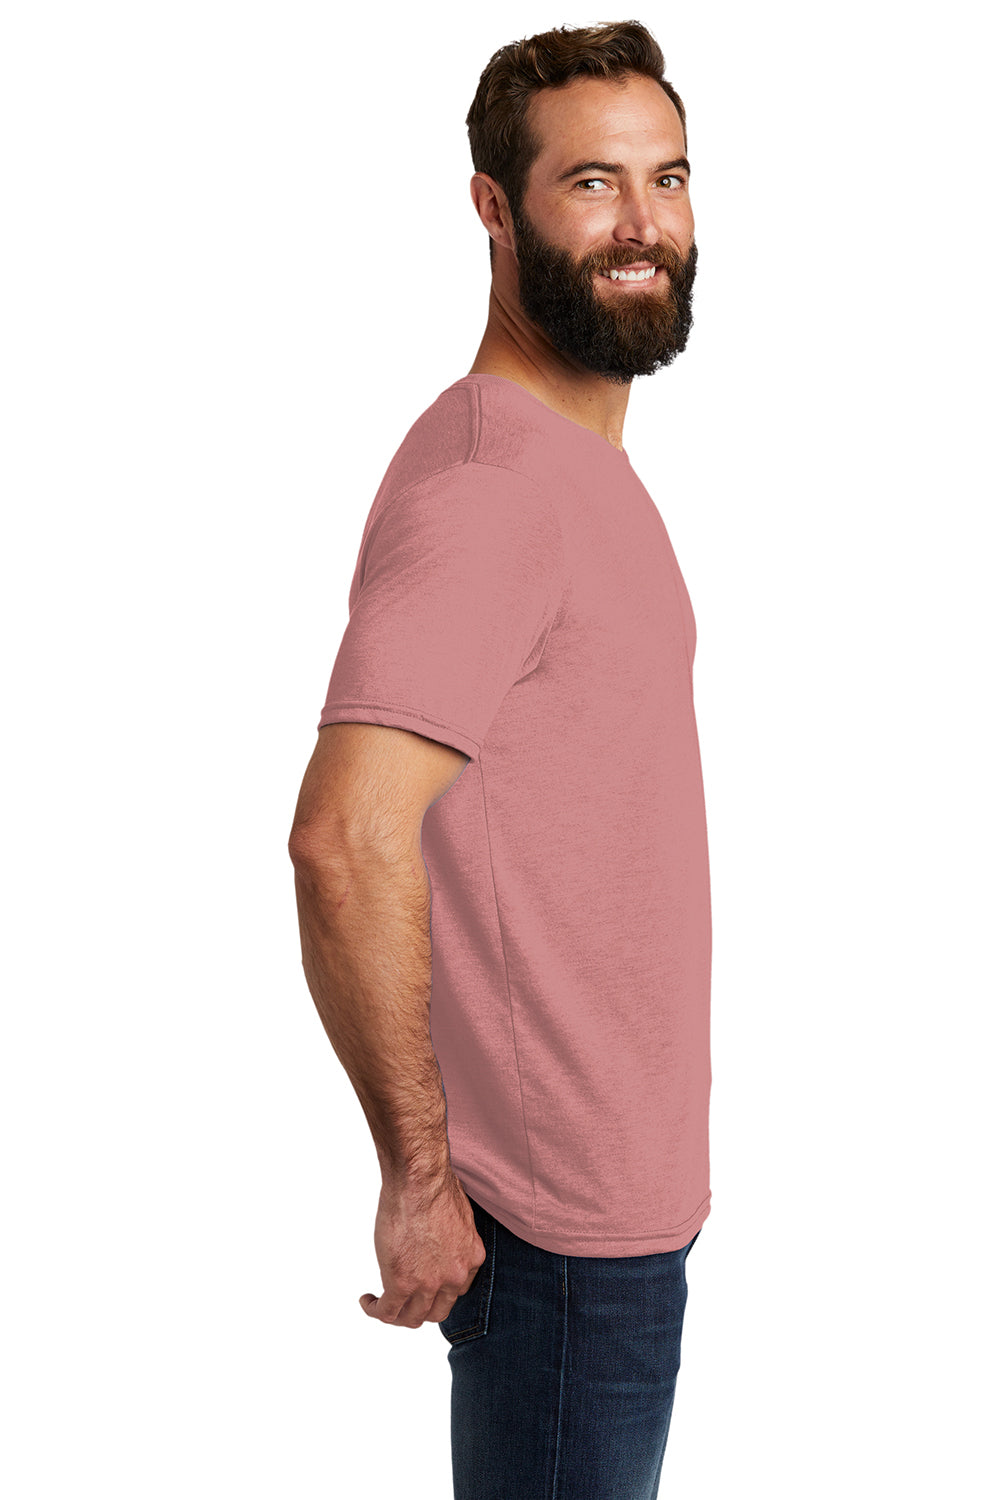 Allmade AL2004 Mens Short Sleeve Crewneck T-Shirt Vintage Rose Pink Model Side